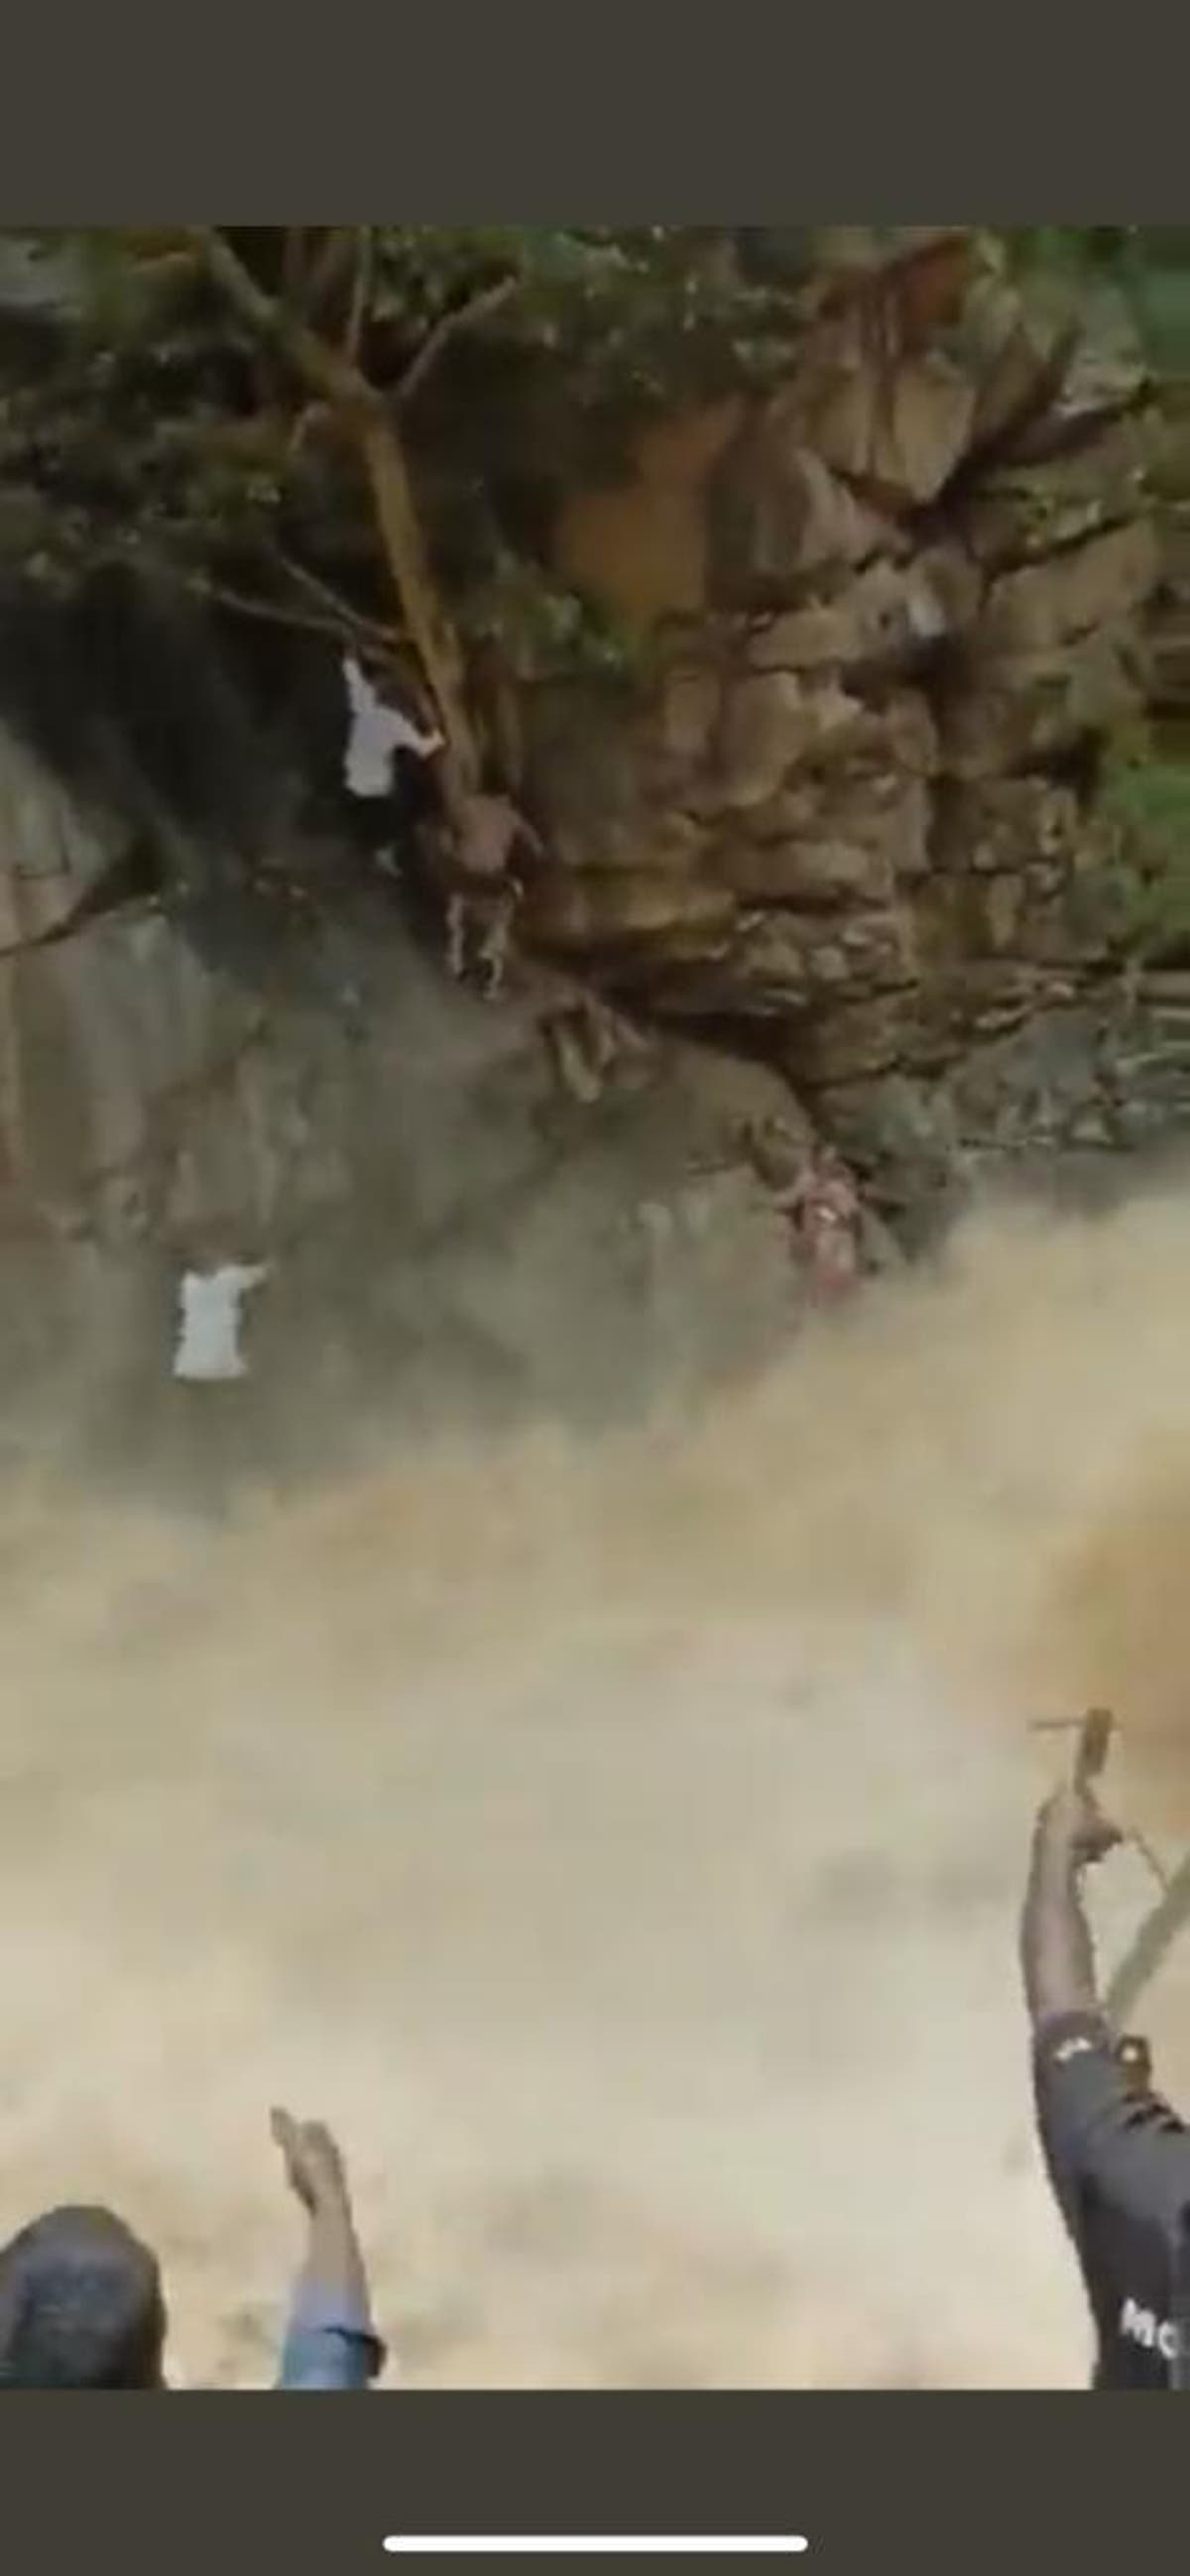 Ma en kind gered uit woedende waterval in Indië